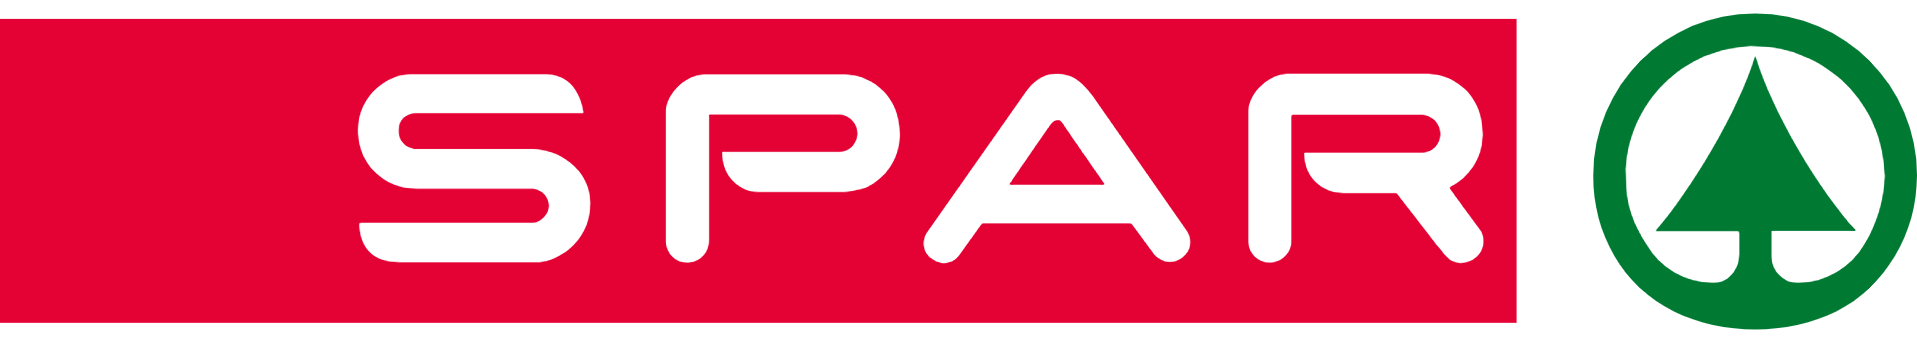 De Spar - logo